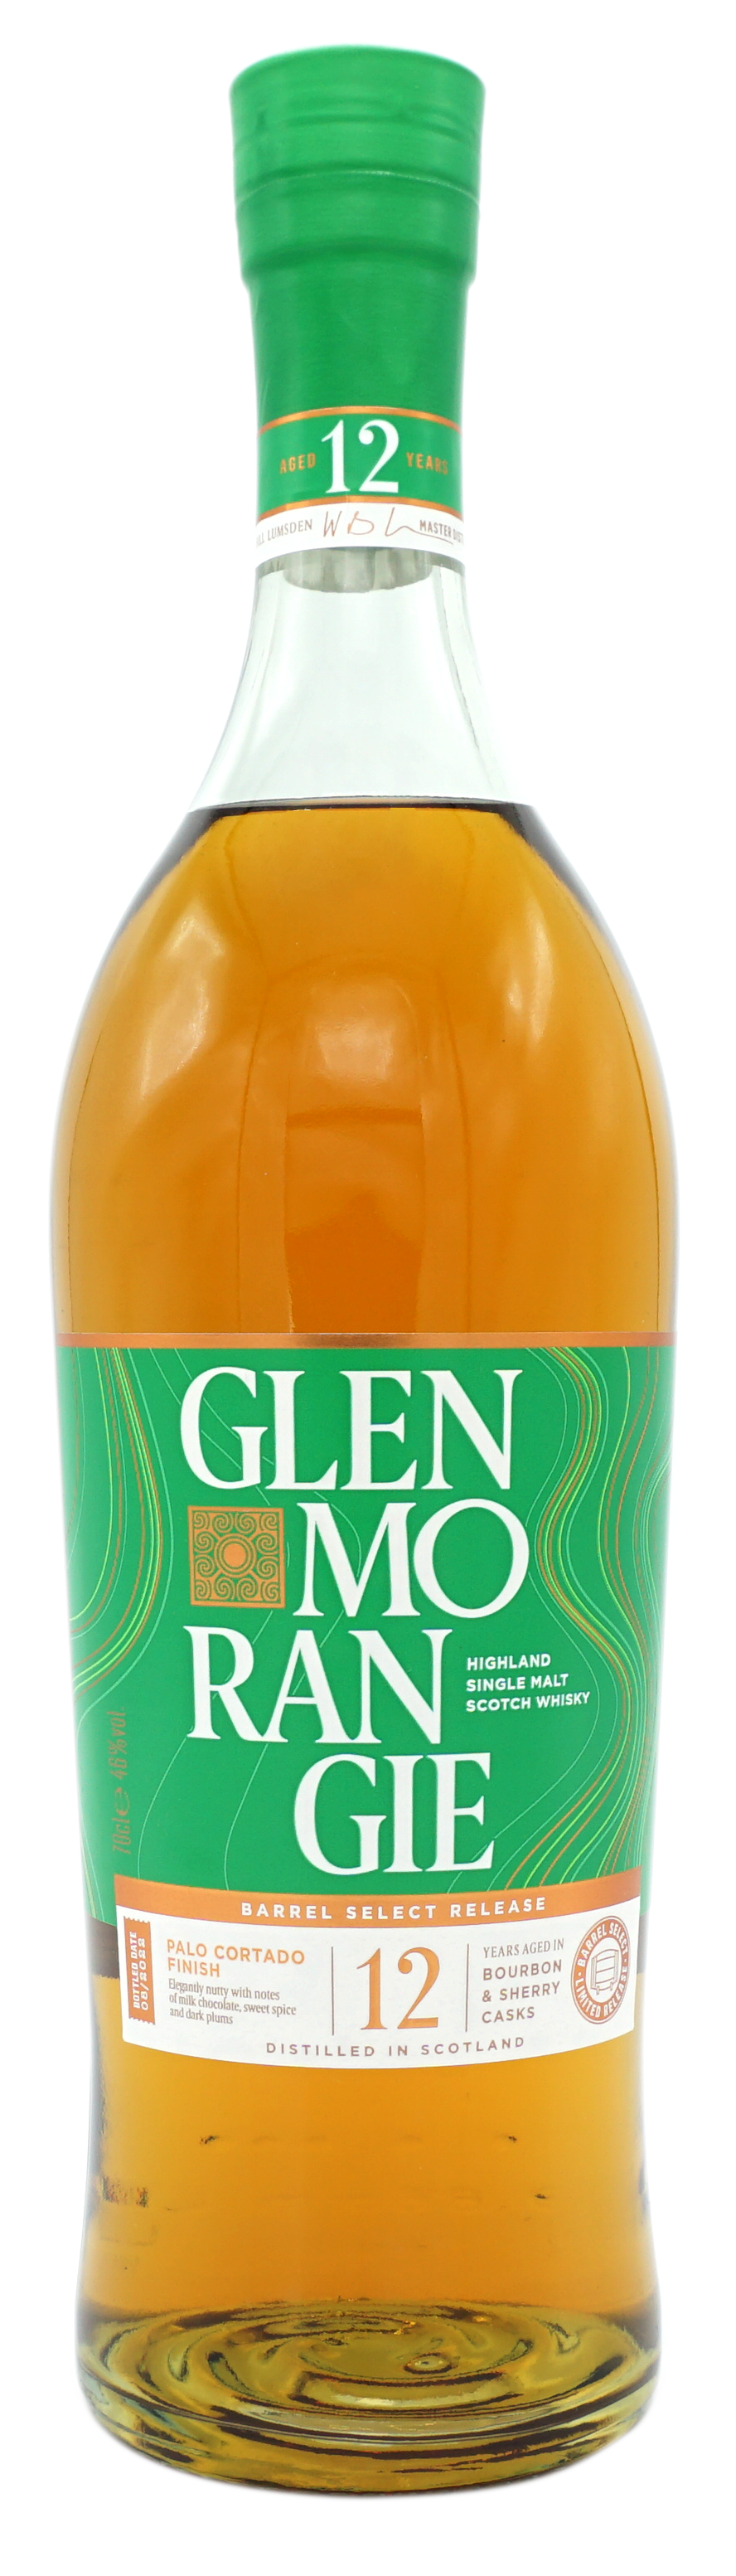 GlenMorangie PaloCortado 12y 46% Fles